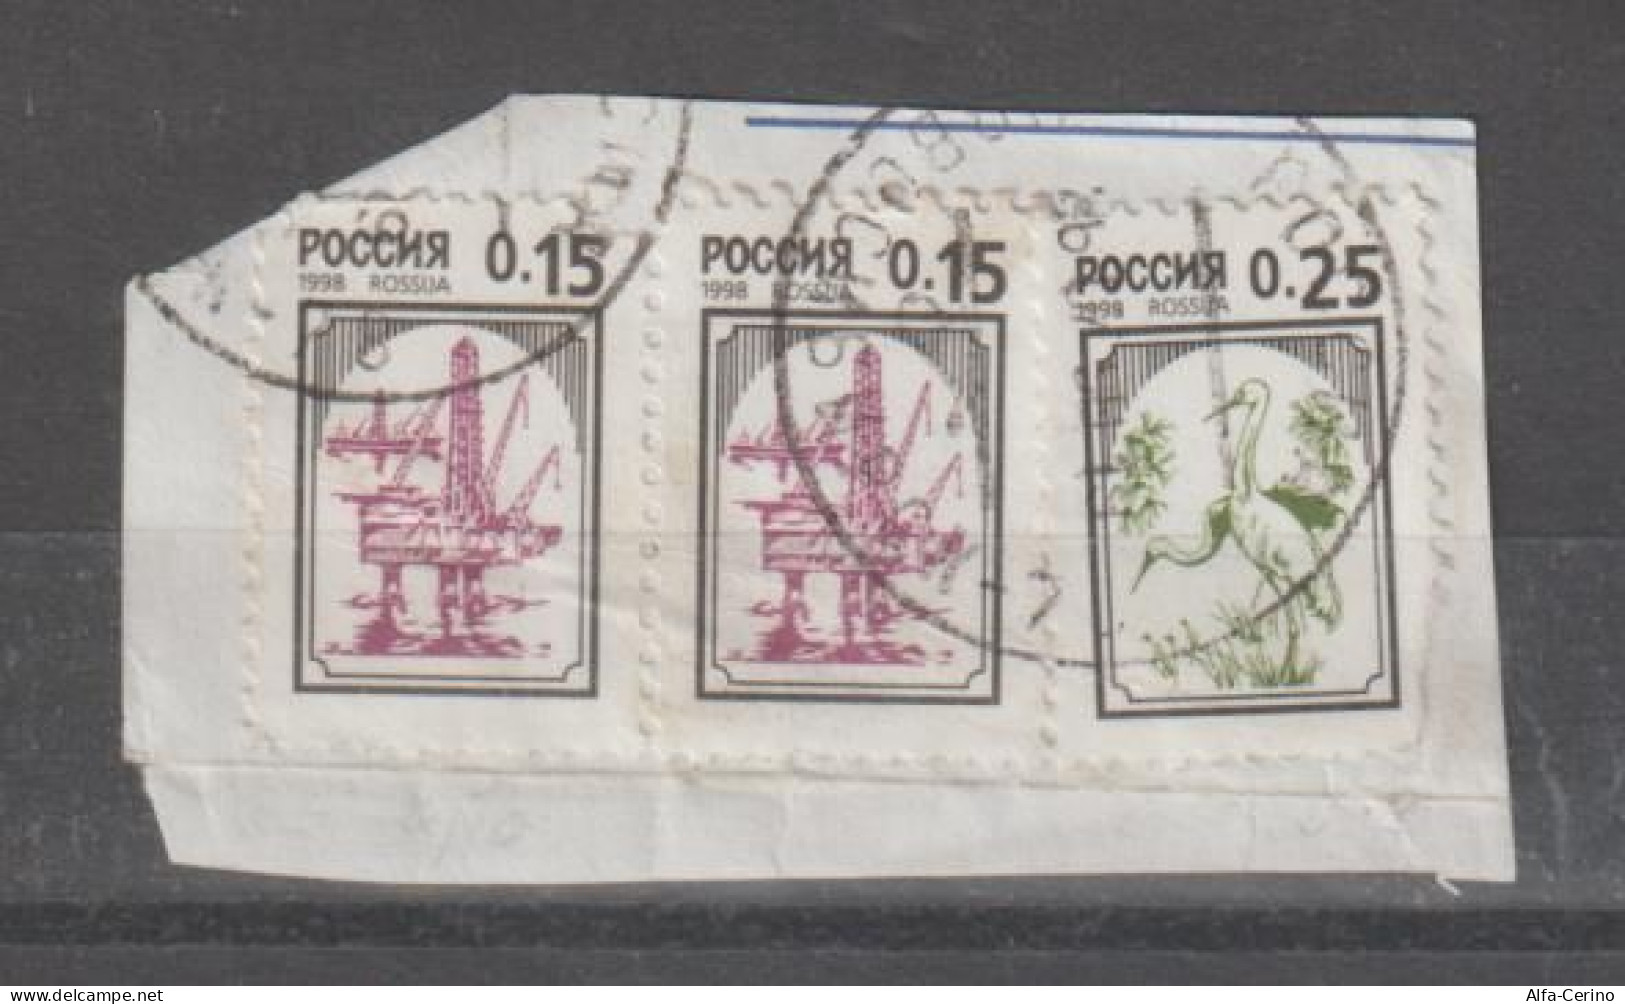 RUSSIA:  1998  SIMBOLI  -  6315x2 + 6316  SU  PICCOLO  FRAMMENTO - Used Stamps